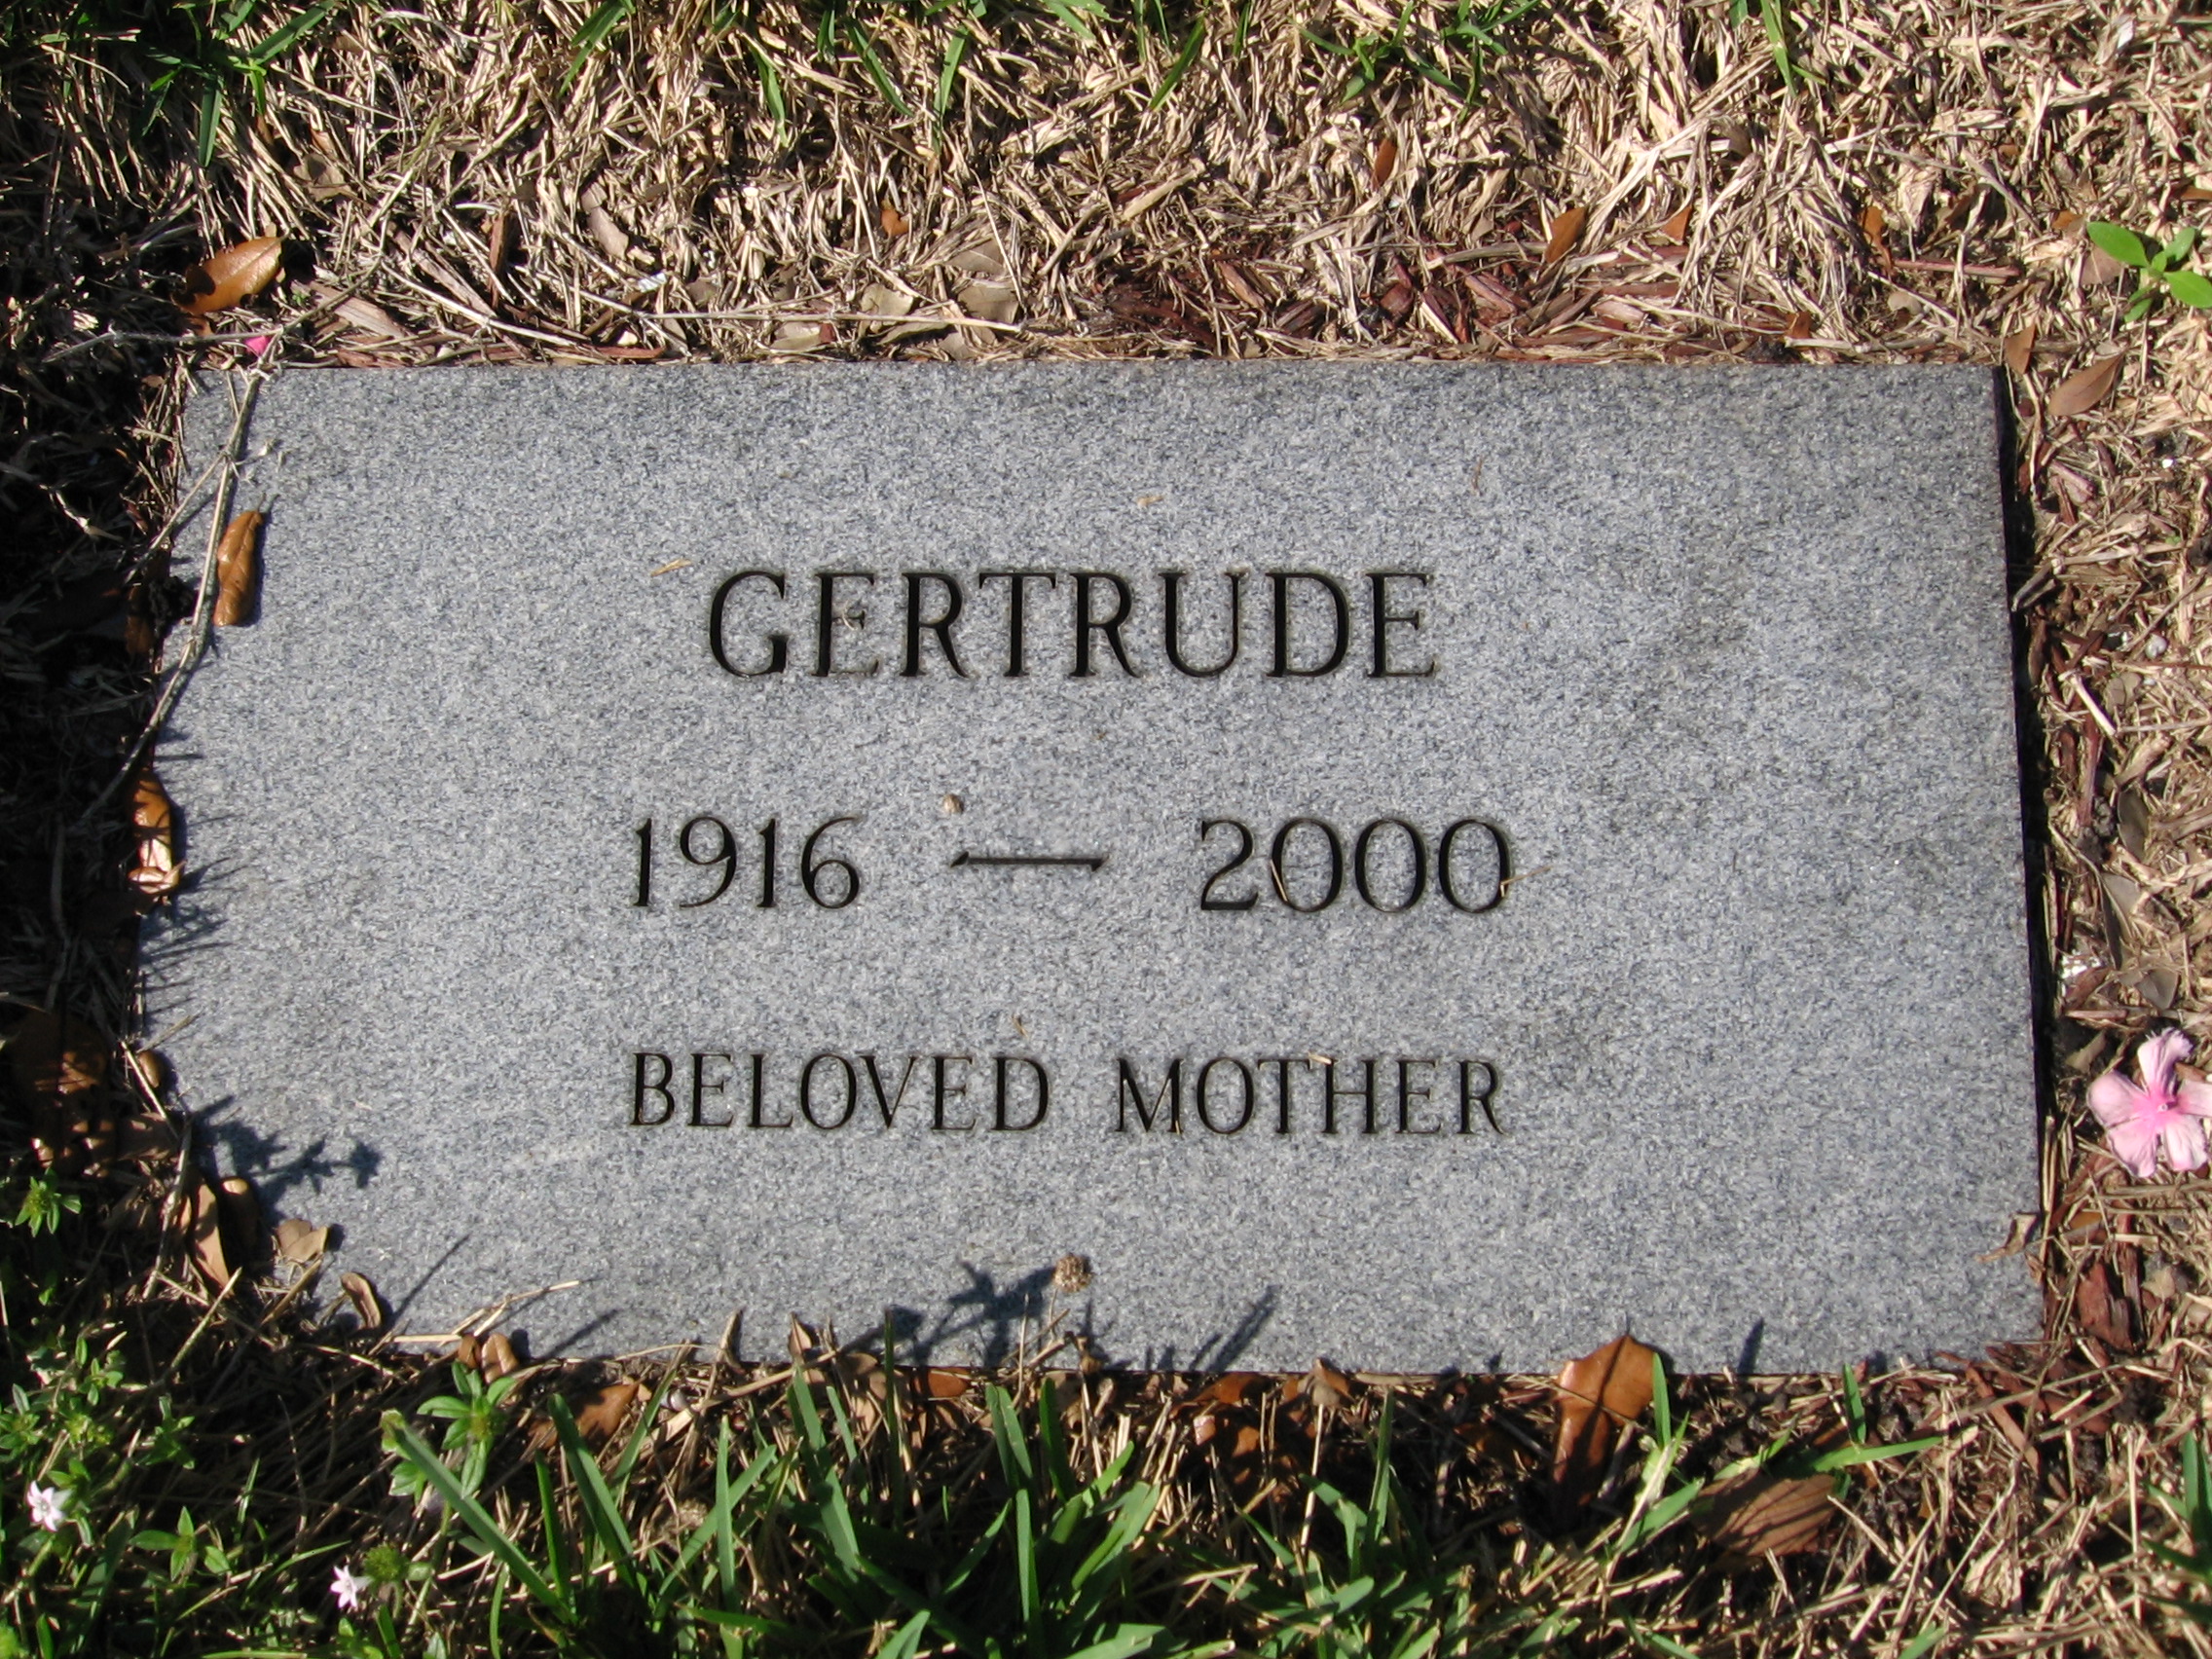 Gertrude Cinadler